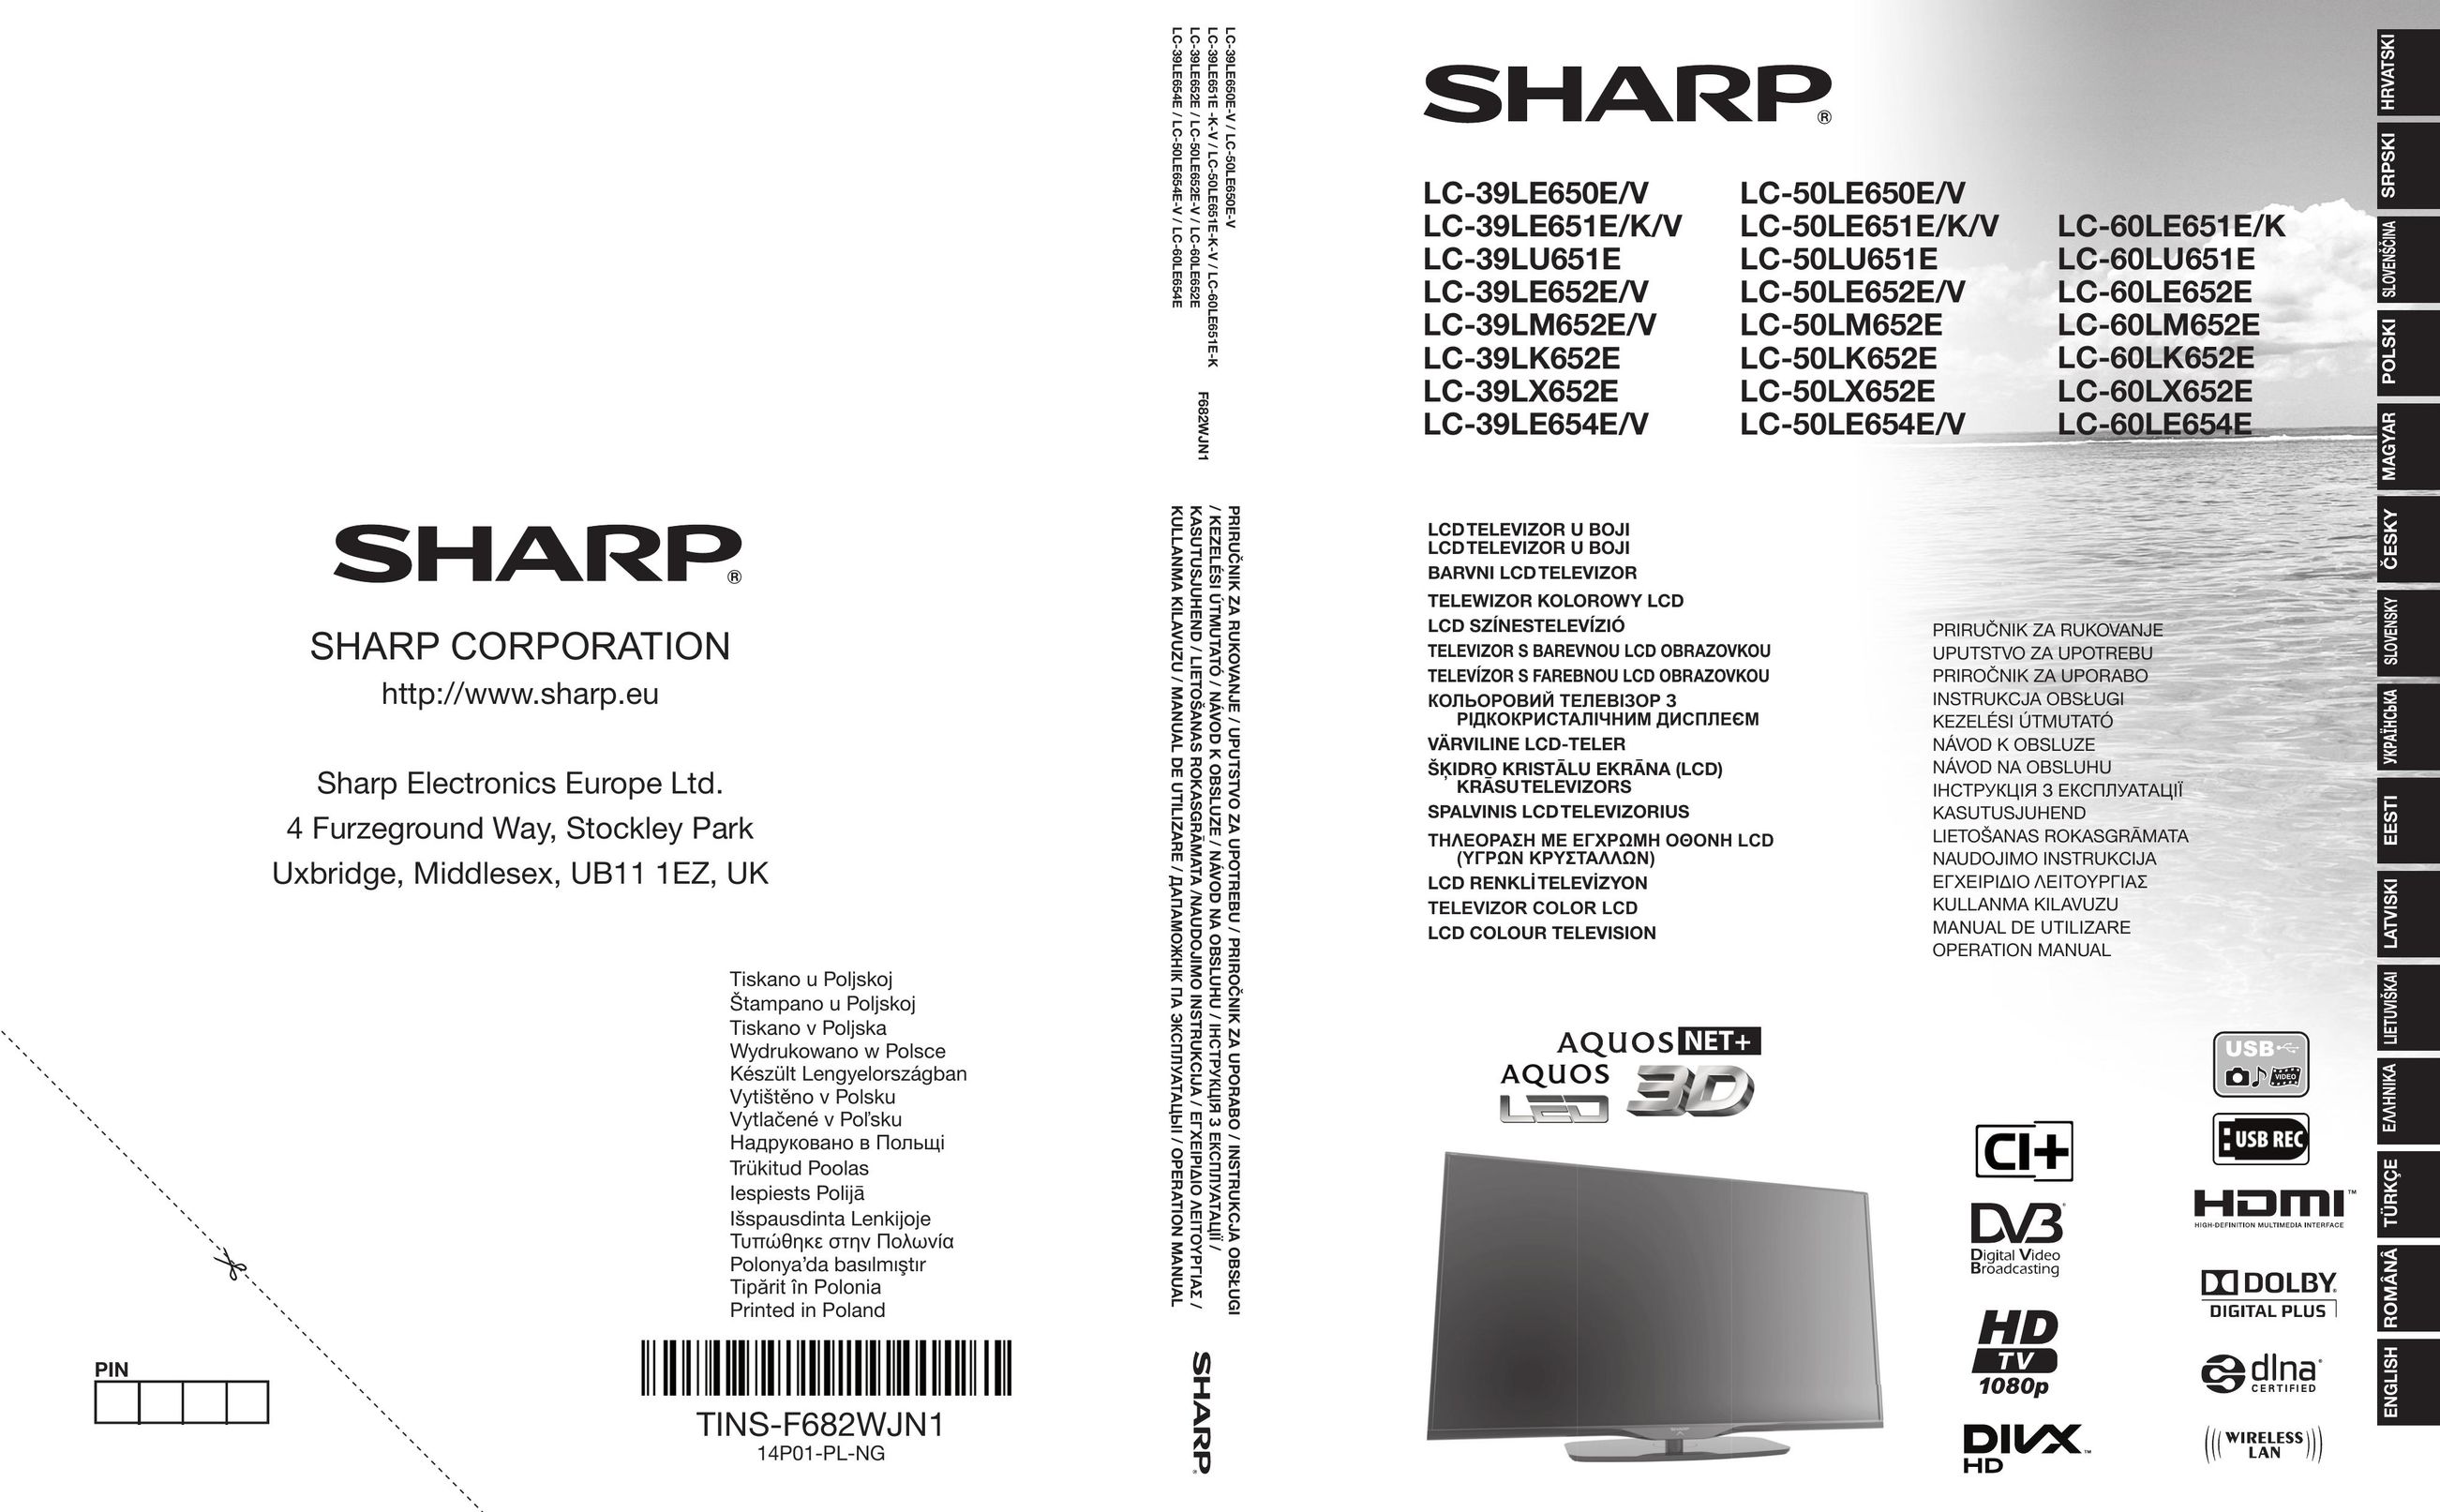 Sharp LC-50LE654E/V Car Video System User Manual